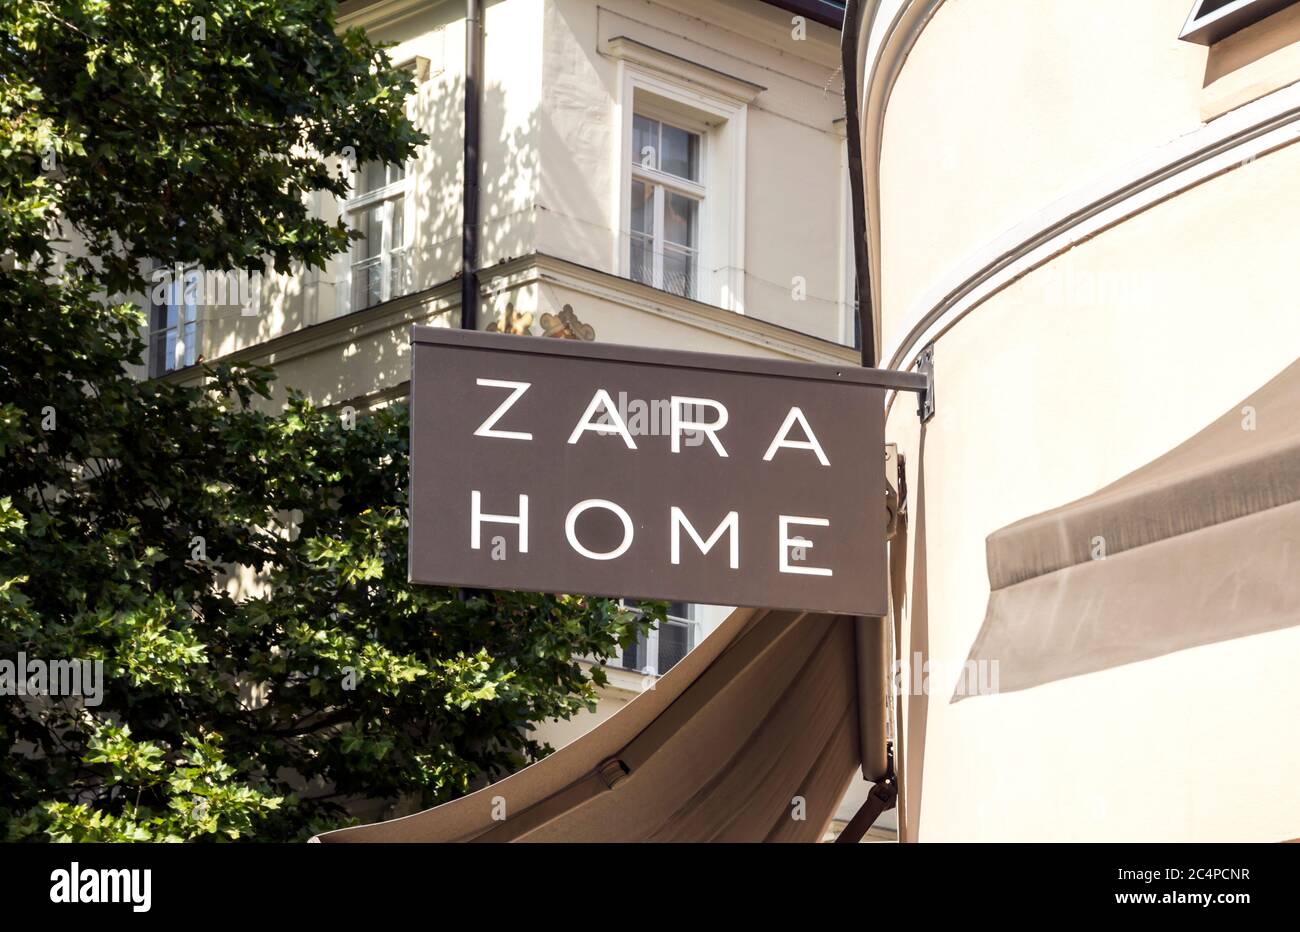 München, DEUTSCHLAND : ZARA HOME Store in München, Deutschland.Zara Home  ist ein Unternehmen der spanischen Inditex-Gruppe, das sich der Herstellung  von h Stockfotografie - Alamy